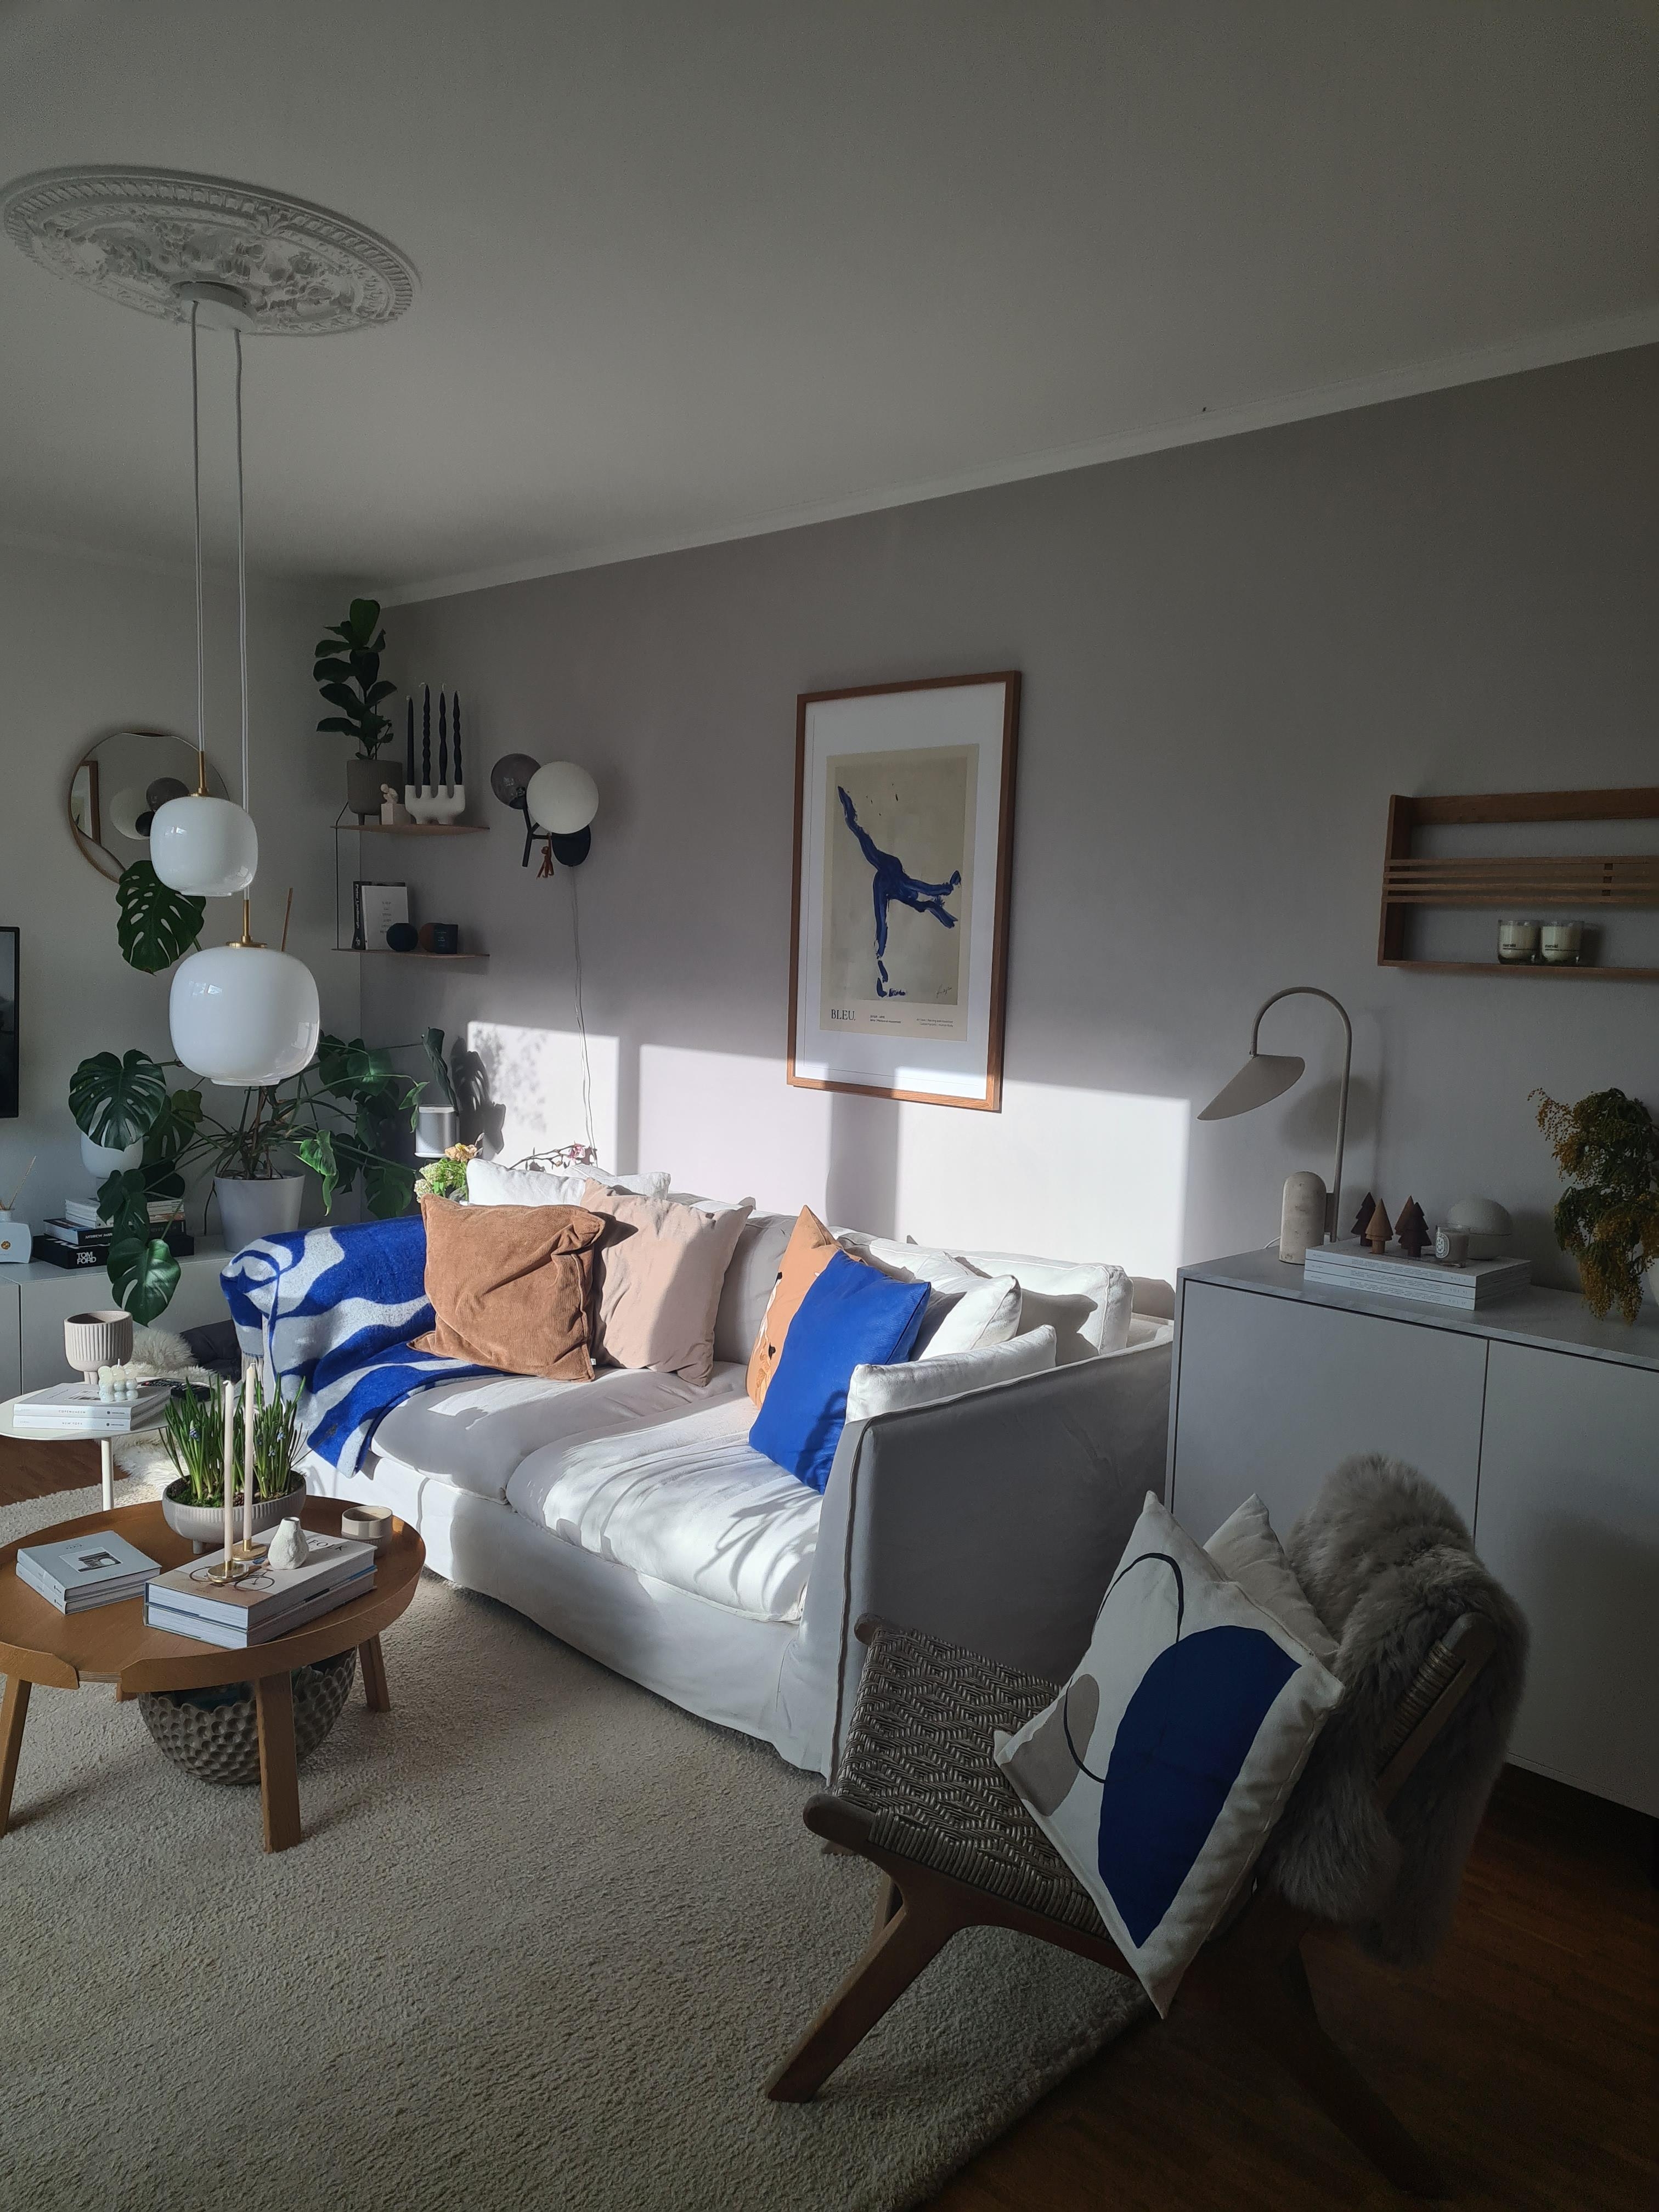 Die Sonne zeigt sich endlich wieder

#livingroom #blueaccents #wohnzimmer #sofa 